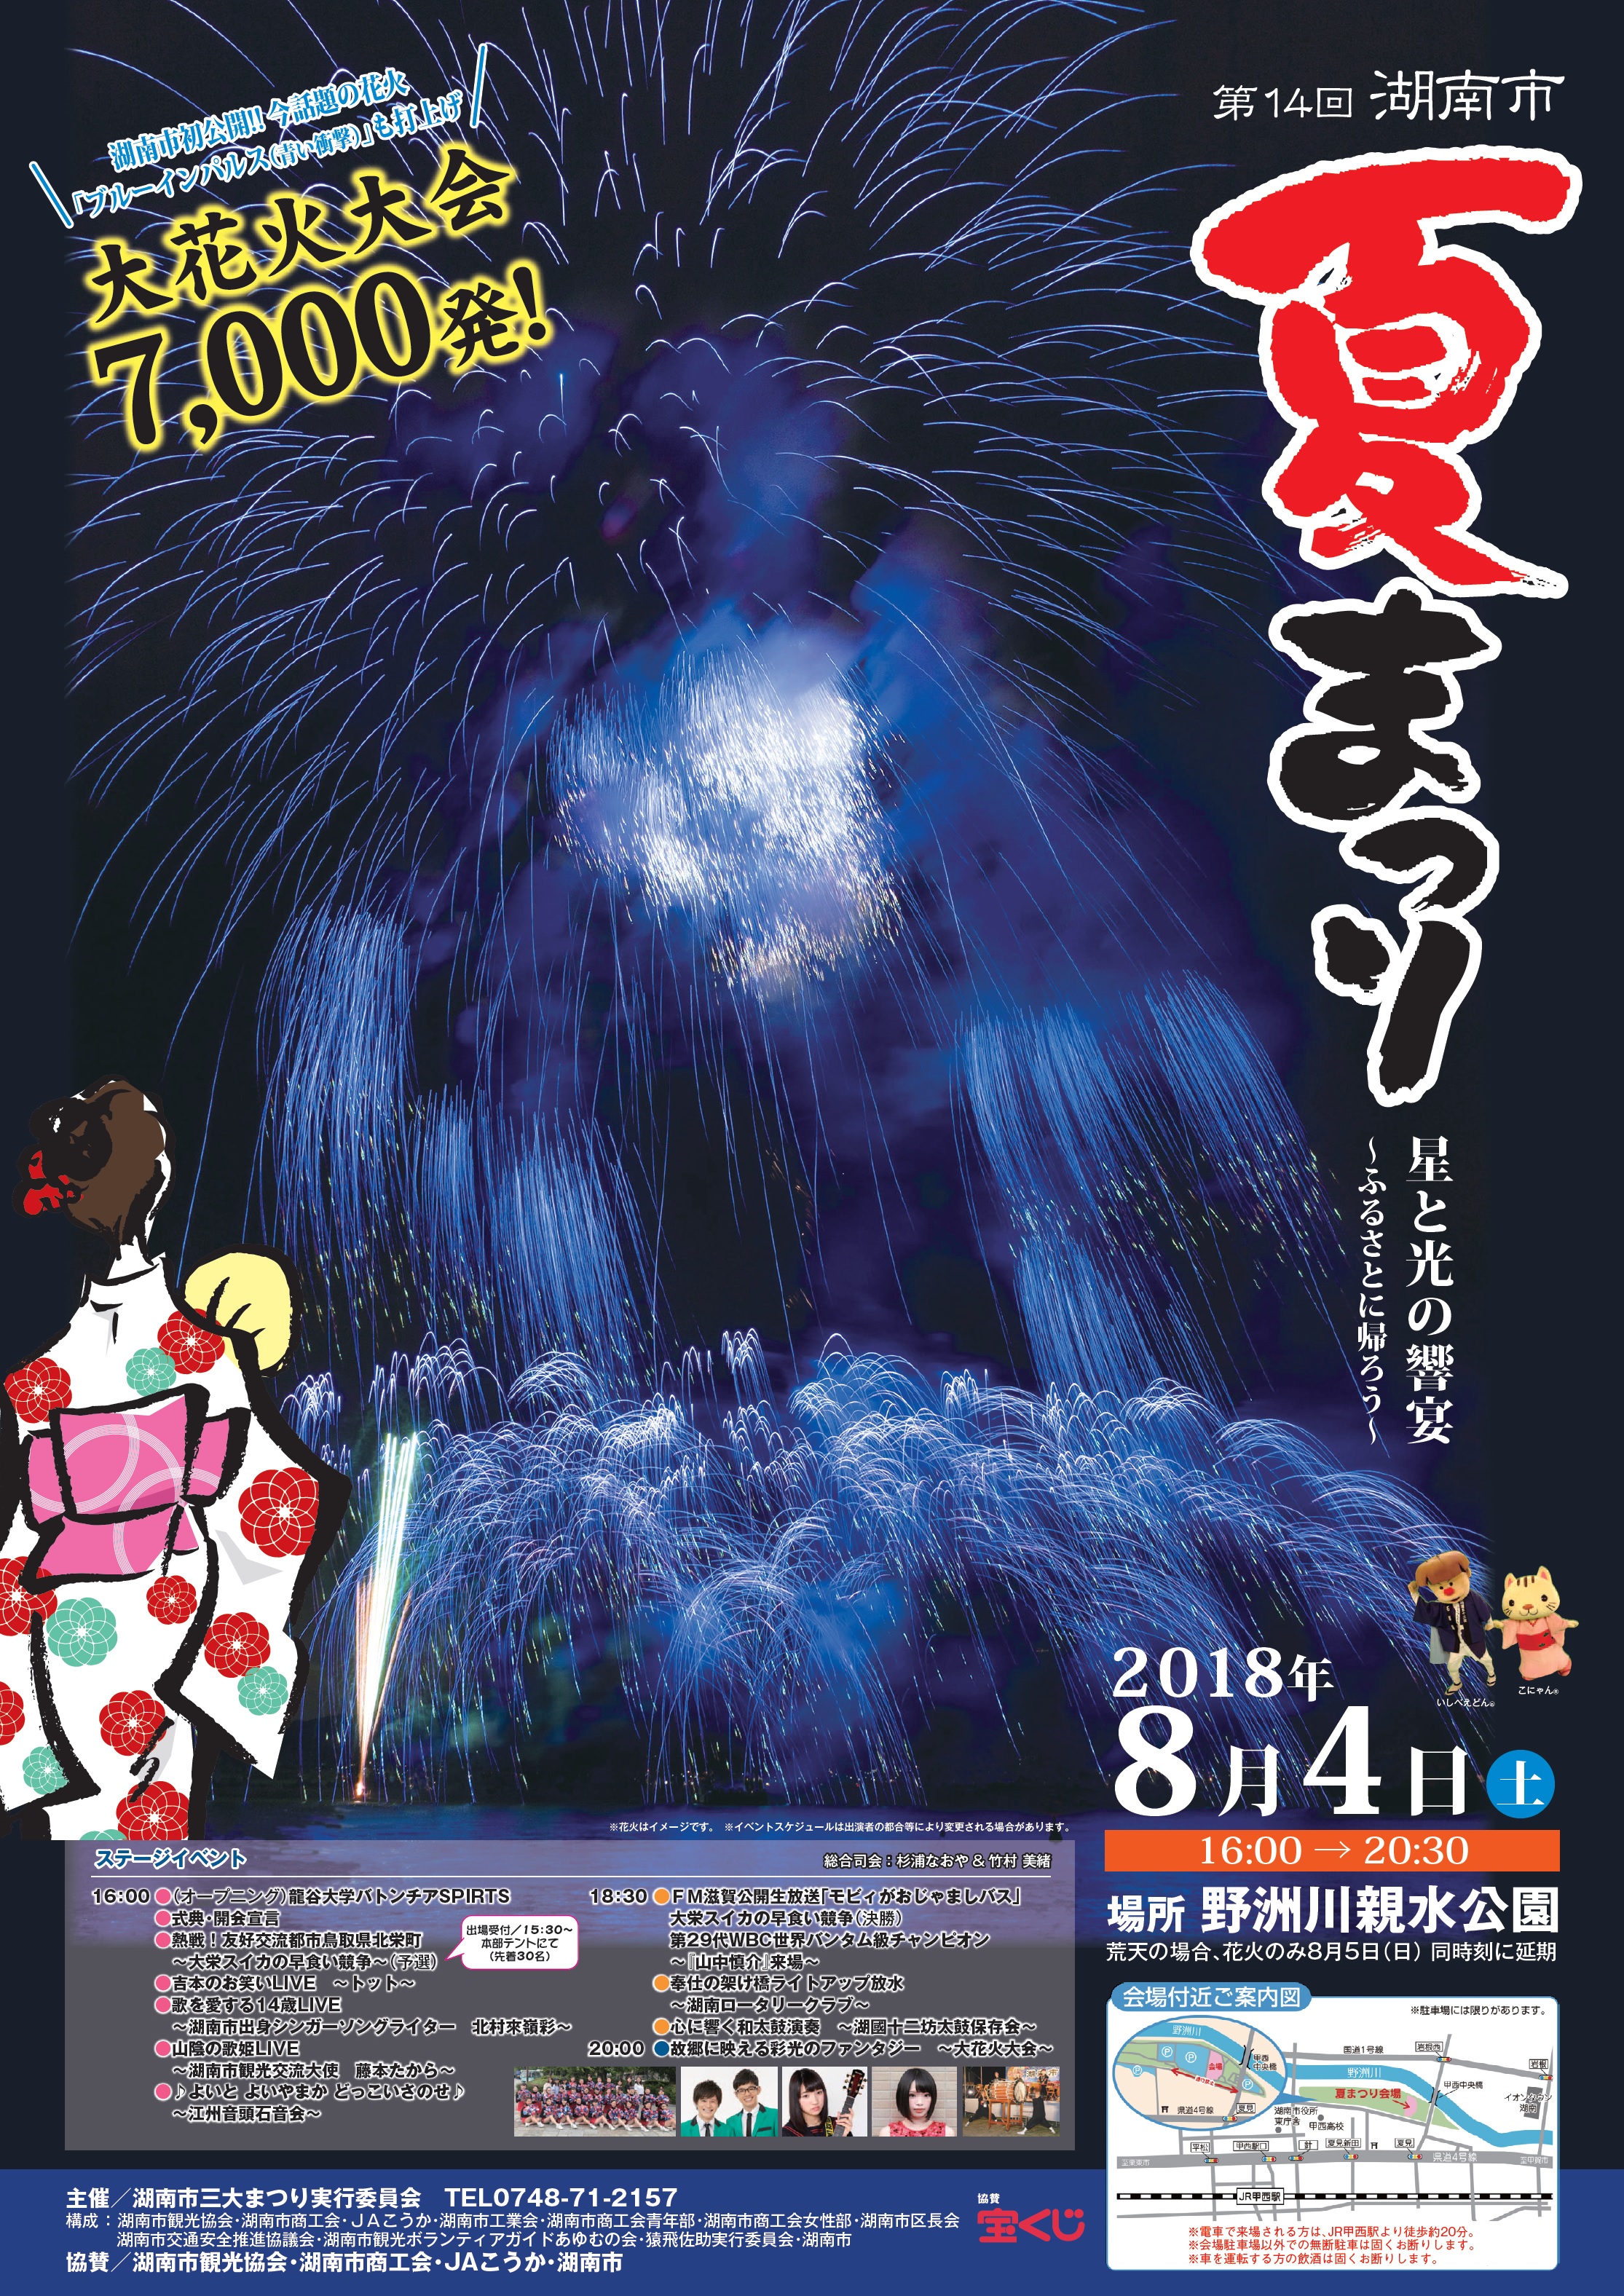 2018年の湖南市夏祭りの花火がすんごいことなってる!日程やプログラムも決定!